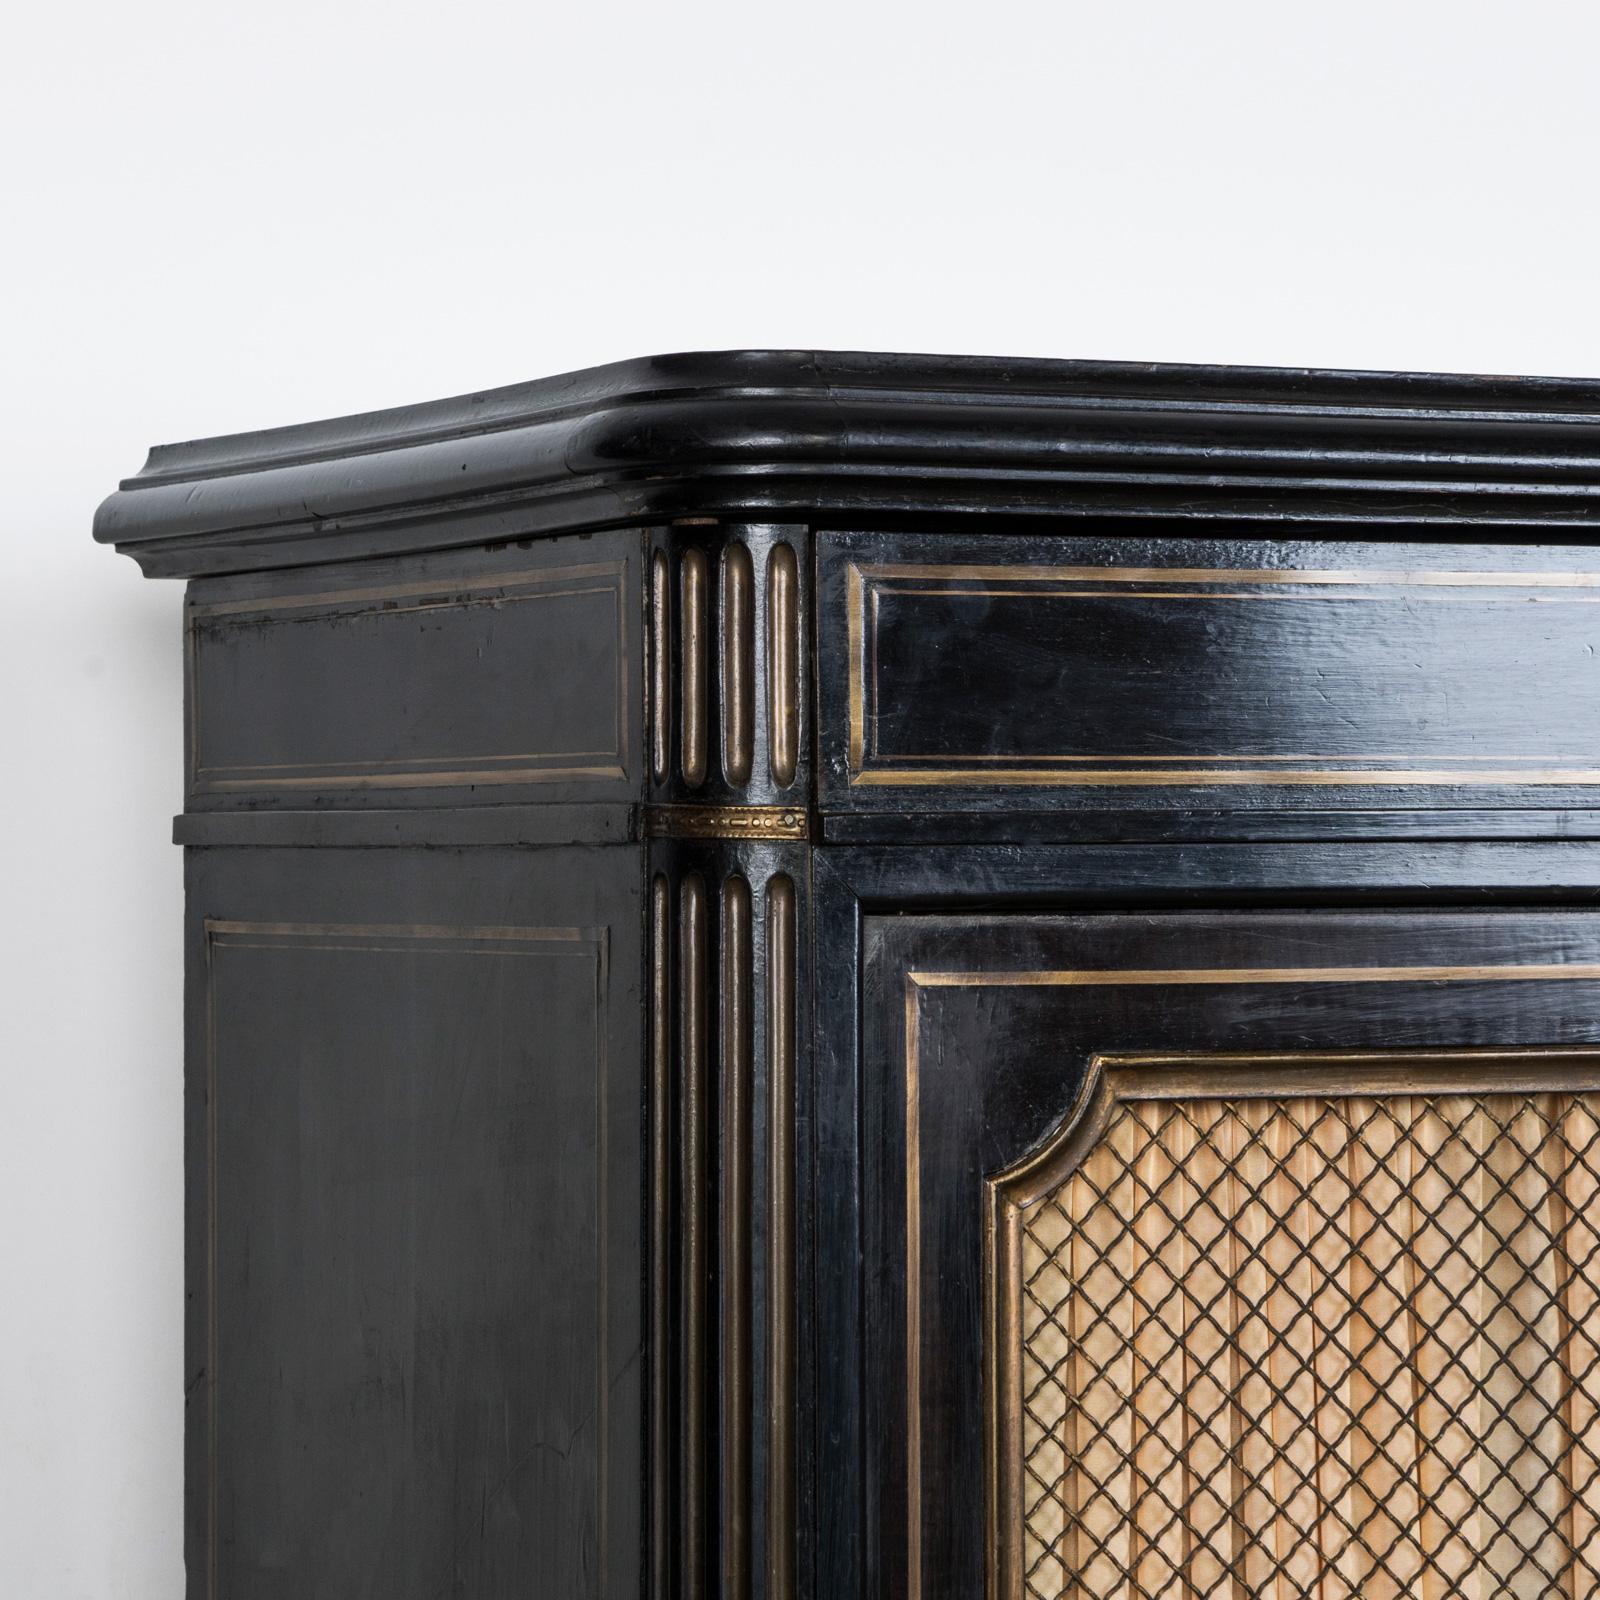 Charmant et esthétique petit cabinet noir ébonisé avec accents en laiton, datant du 19ème siècle dans le style français Napoléon III.

Ce meuble noir ébonisé est agrémenté de jolis ornements en laiton, mettant en valeur une fusion d'élégance.